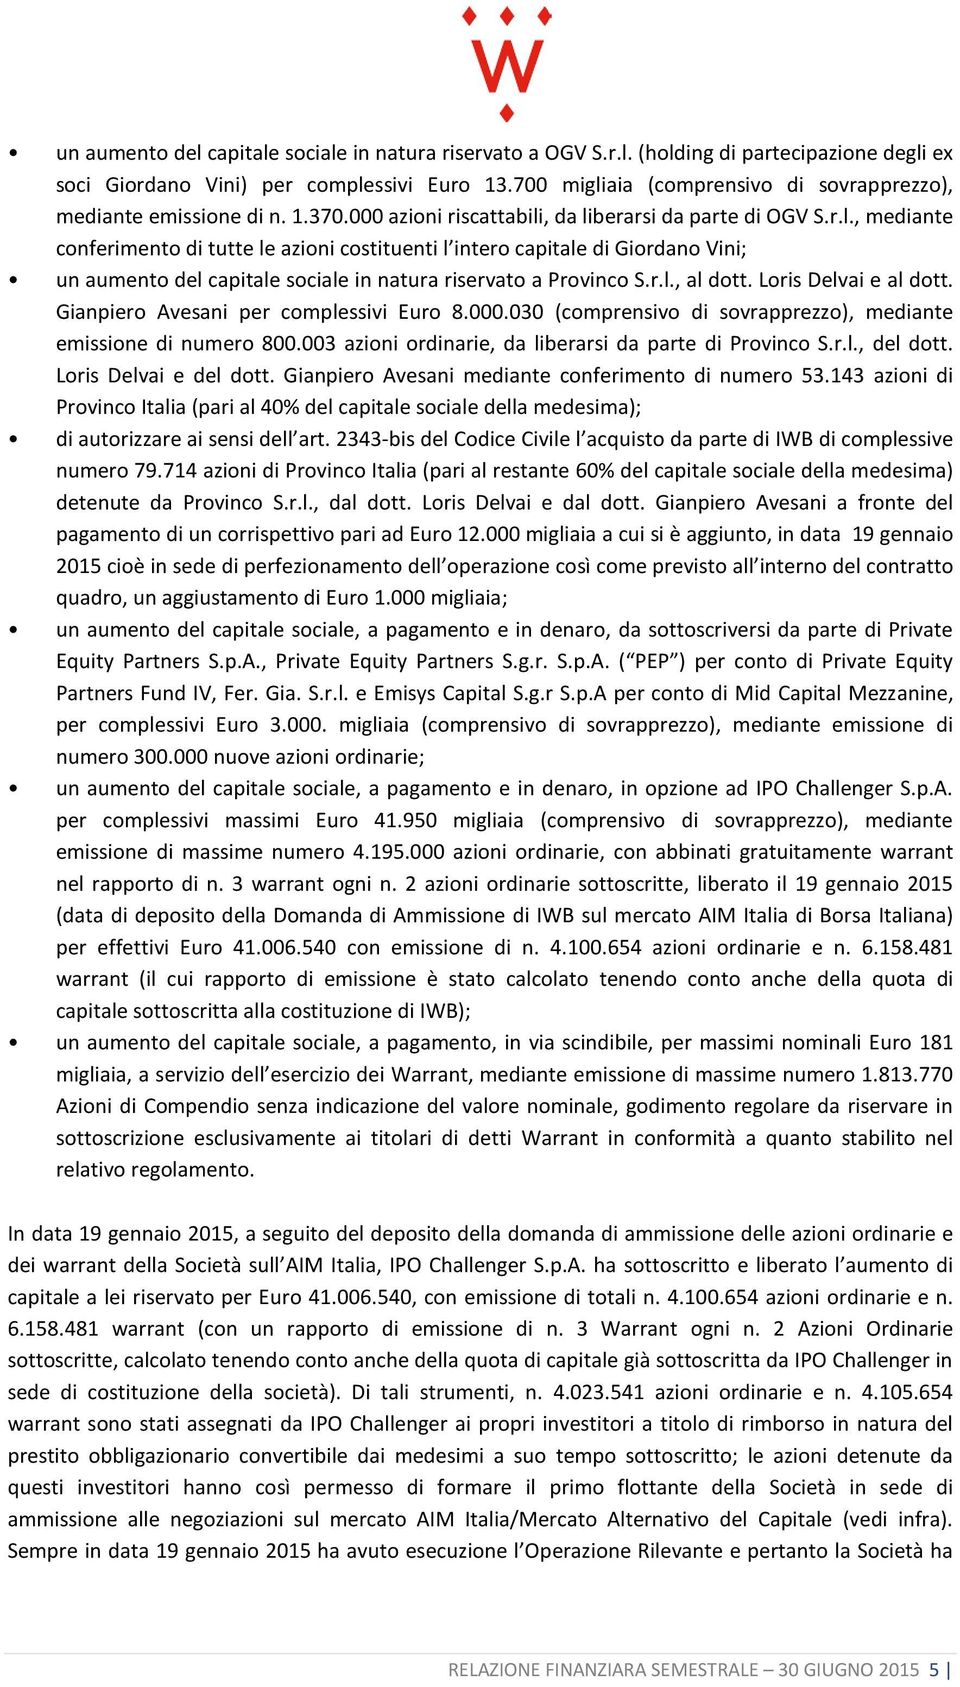 r.l., al dott. Loris Delvai e al dott. Gianpiero Avesani per complessivi Euro 8.000.030 (comprensivo di sovrapprezzo), mediante emissione di numero 800.